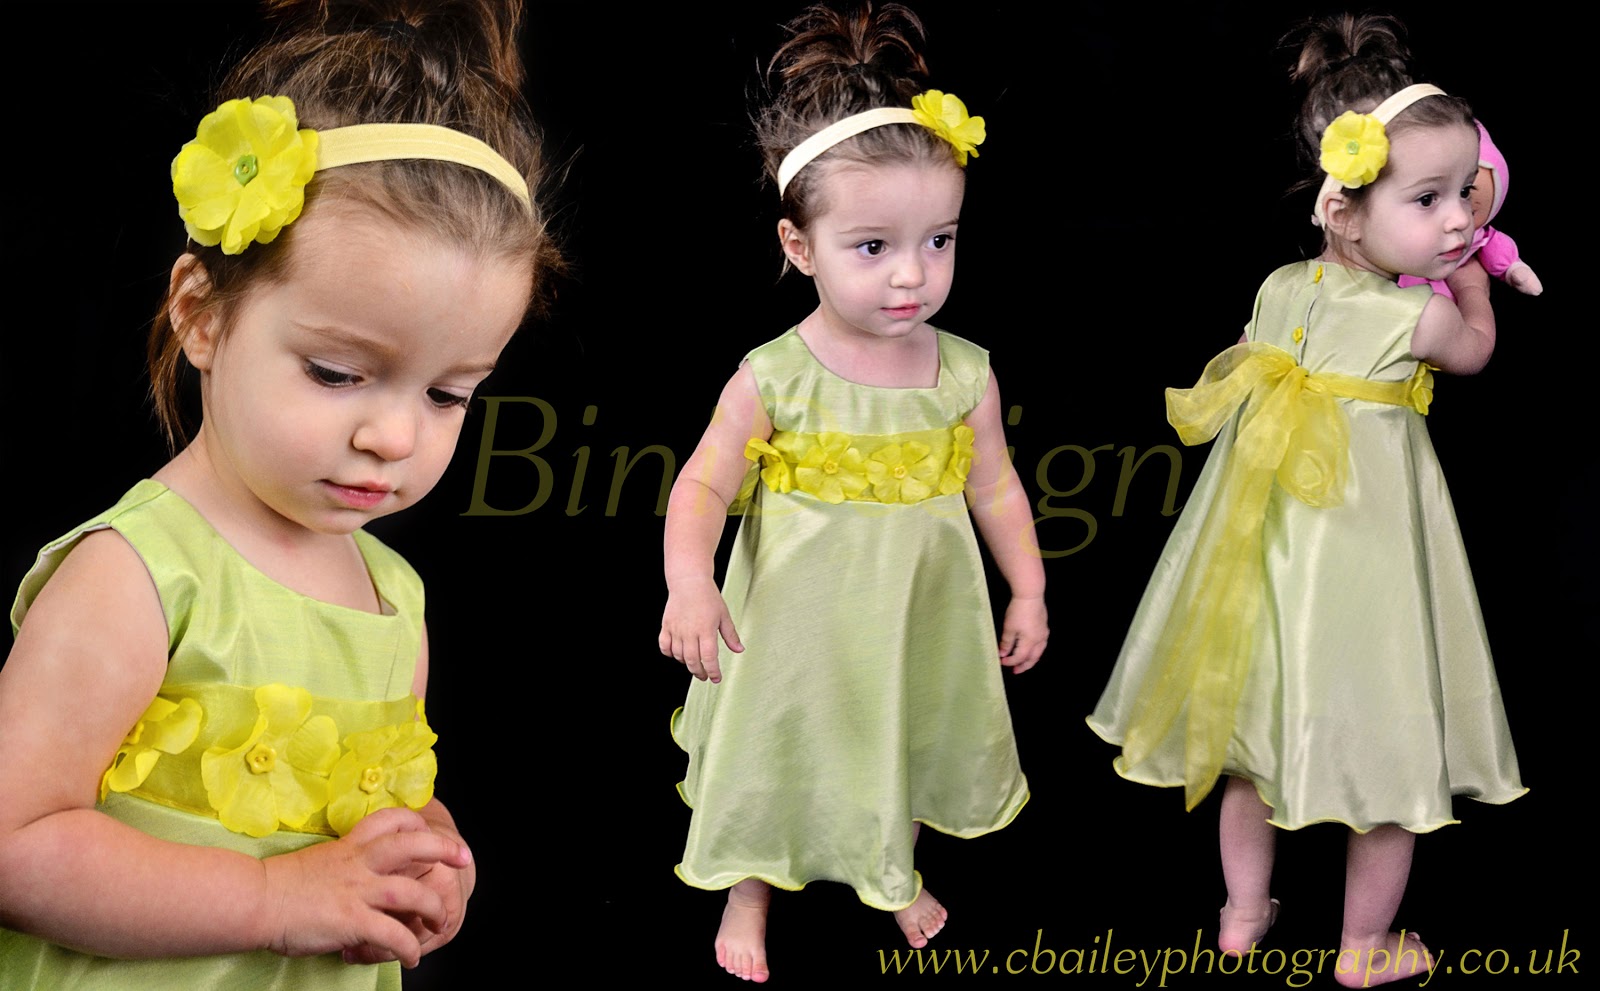 Bộ sưu tập những mẫu váy đầm đẹp cho bé gái 2 tuổi